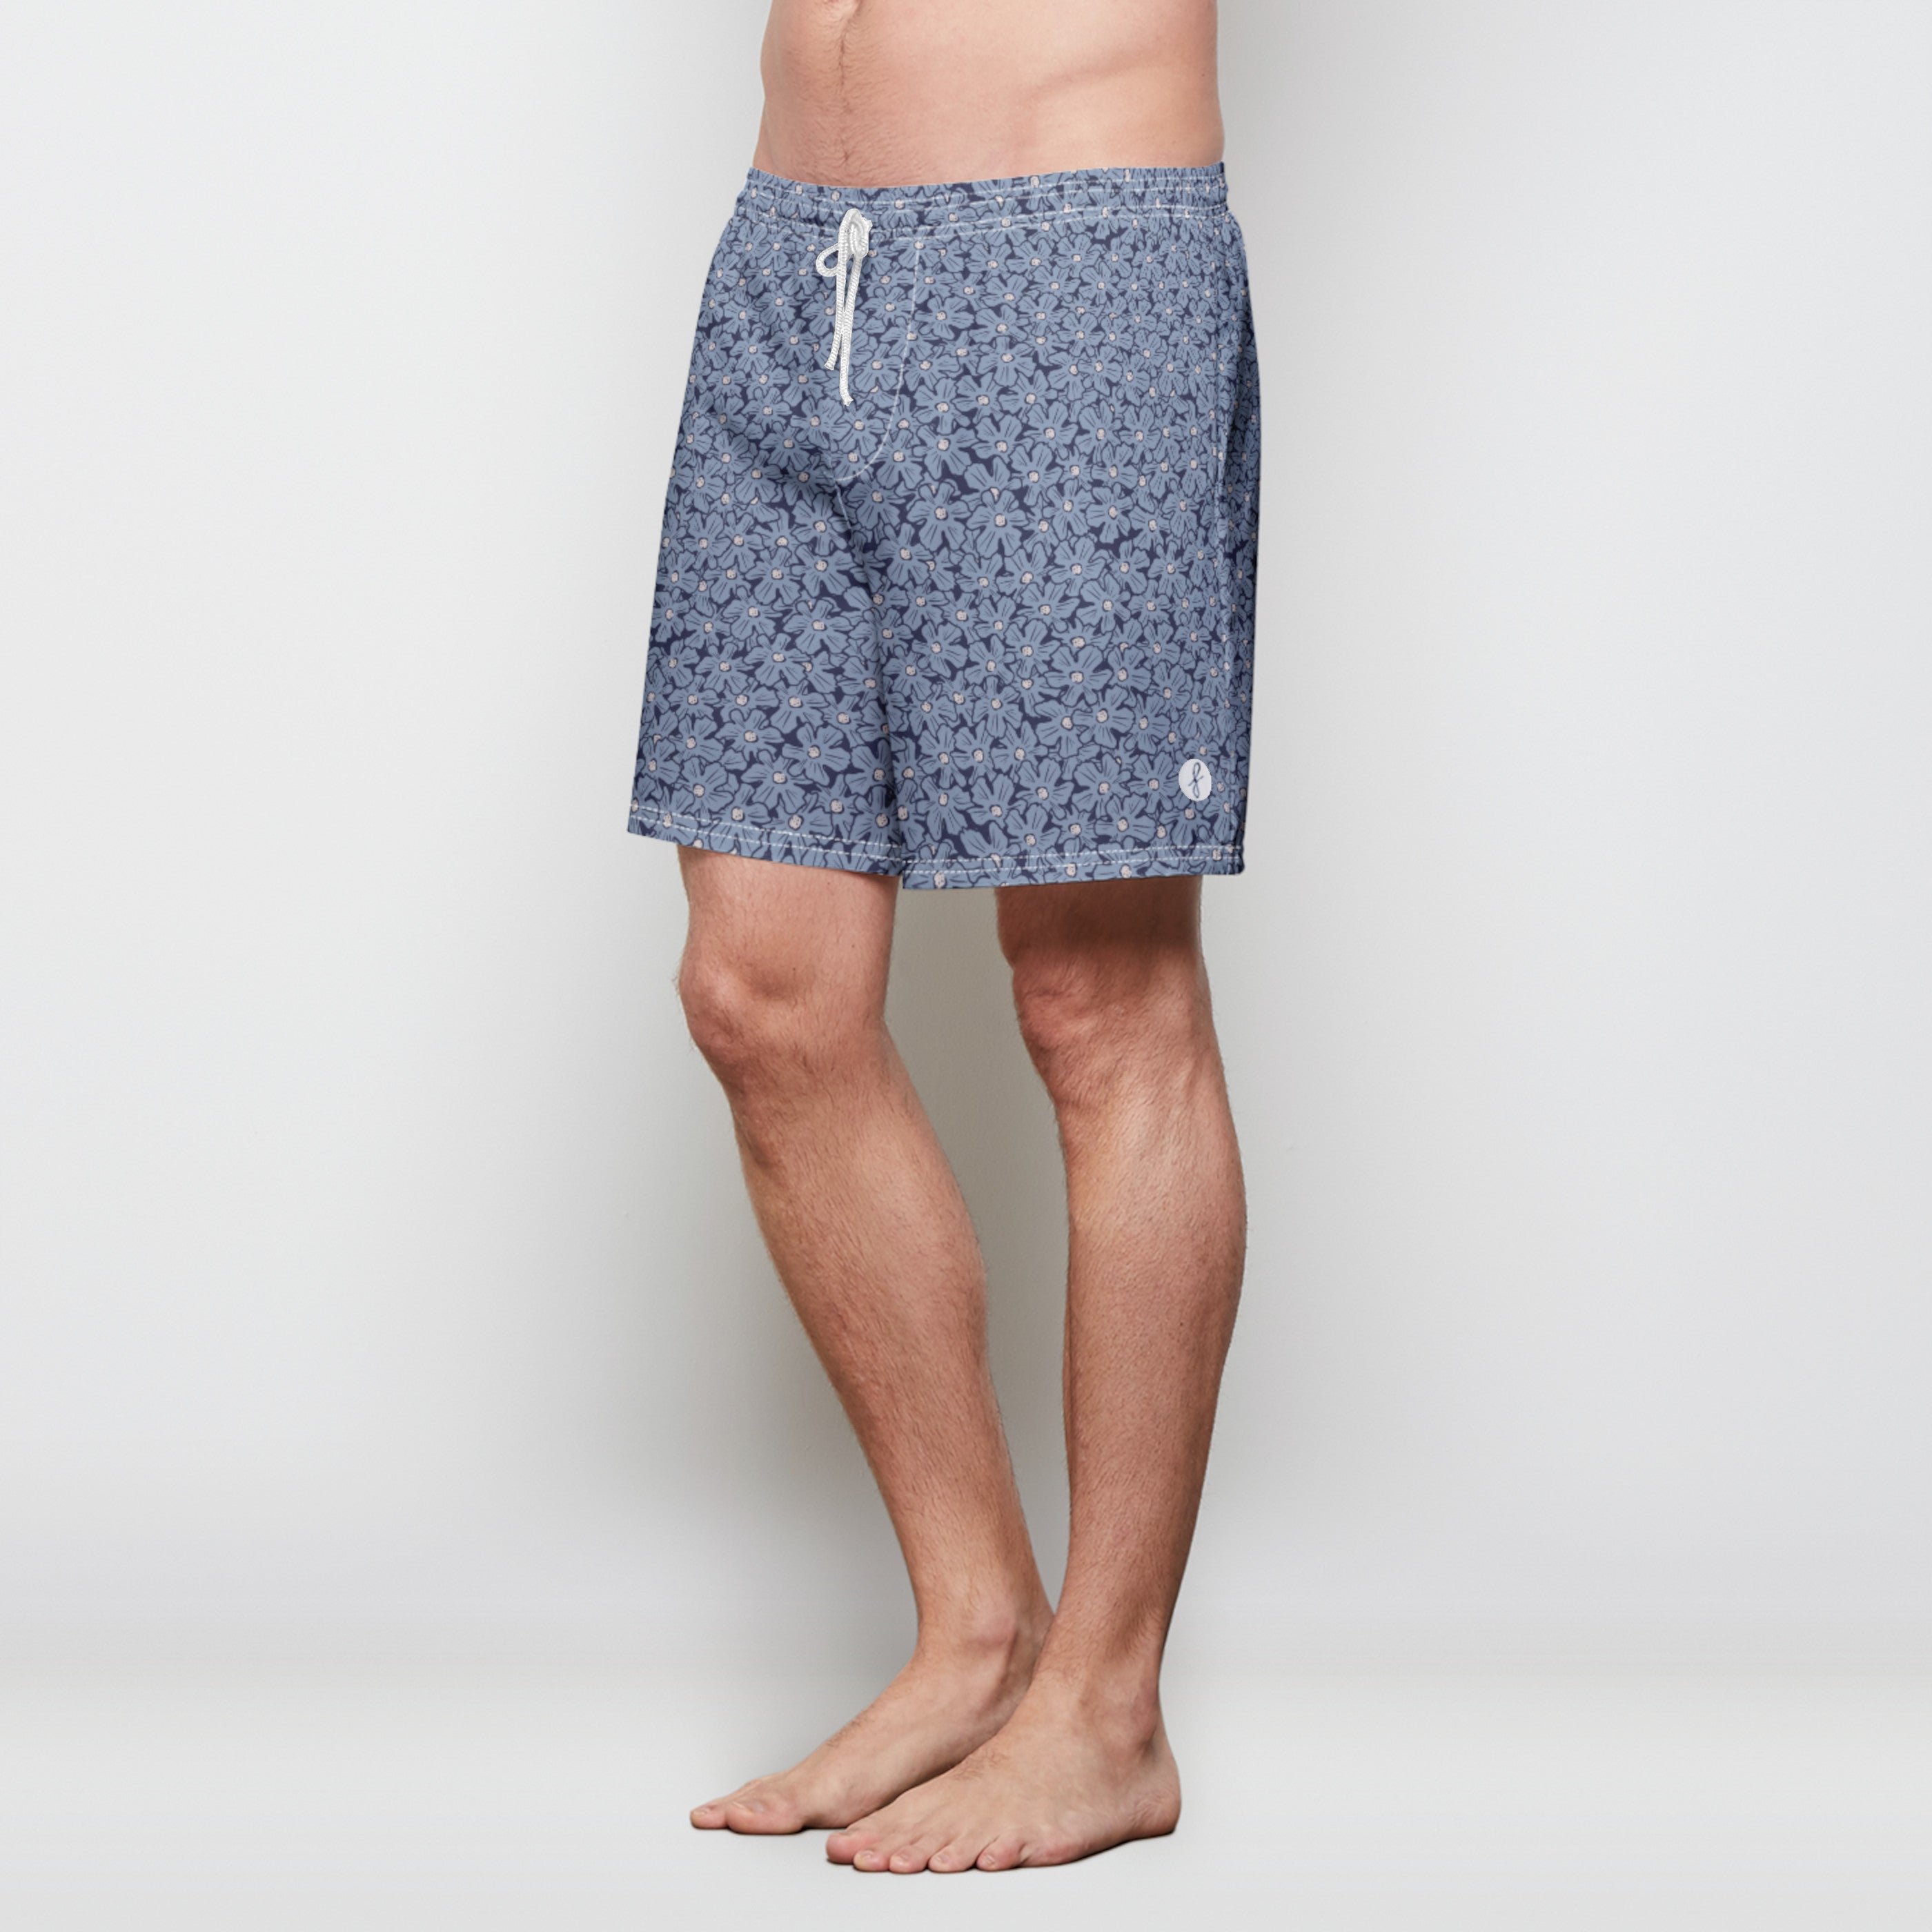 Maui Hybrid shorts